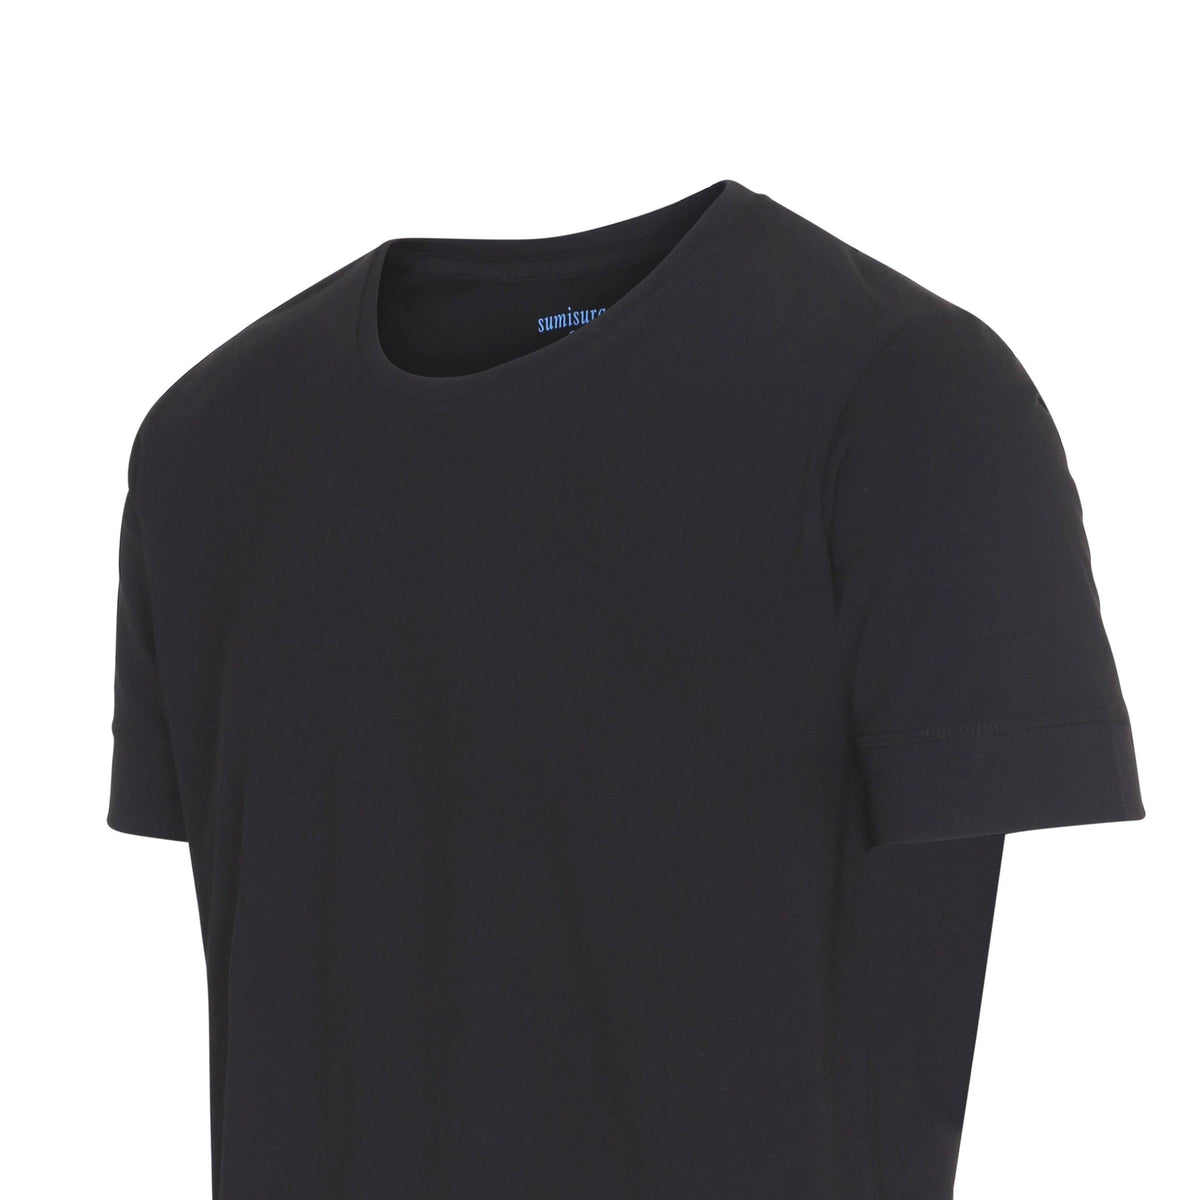 Bari – Black Round Neck – T-Shirts – Sumisura